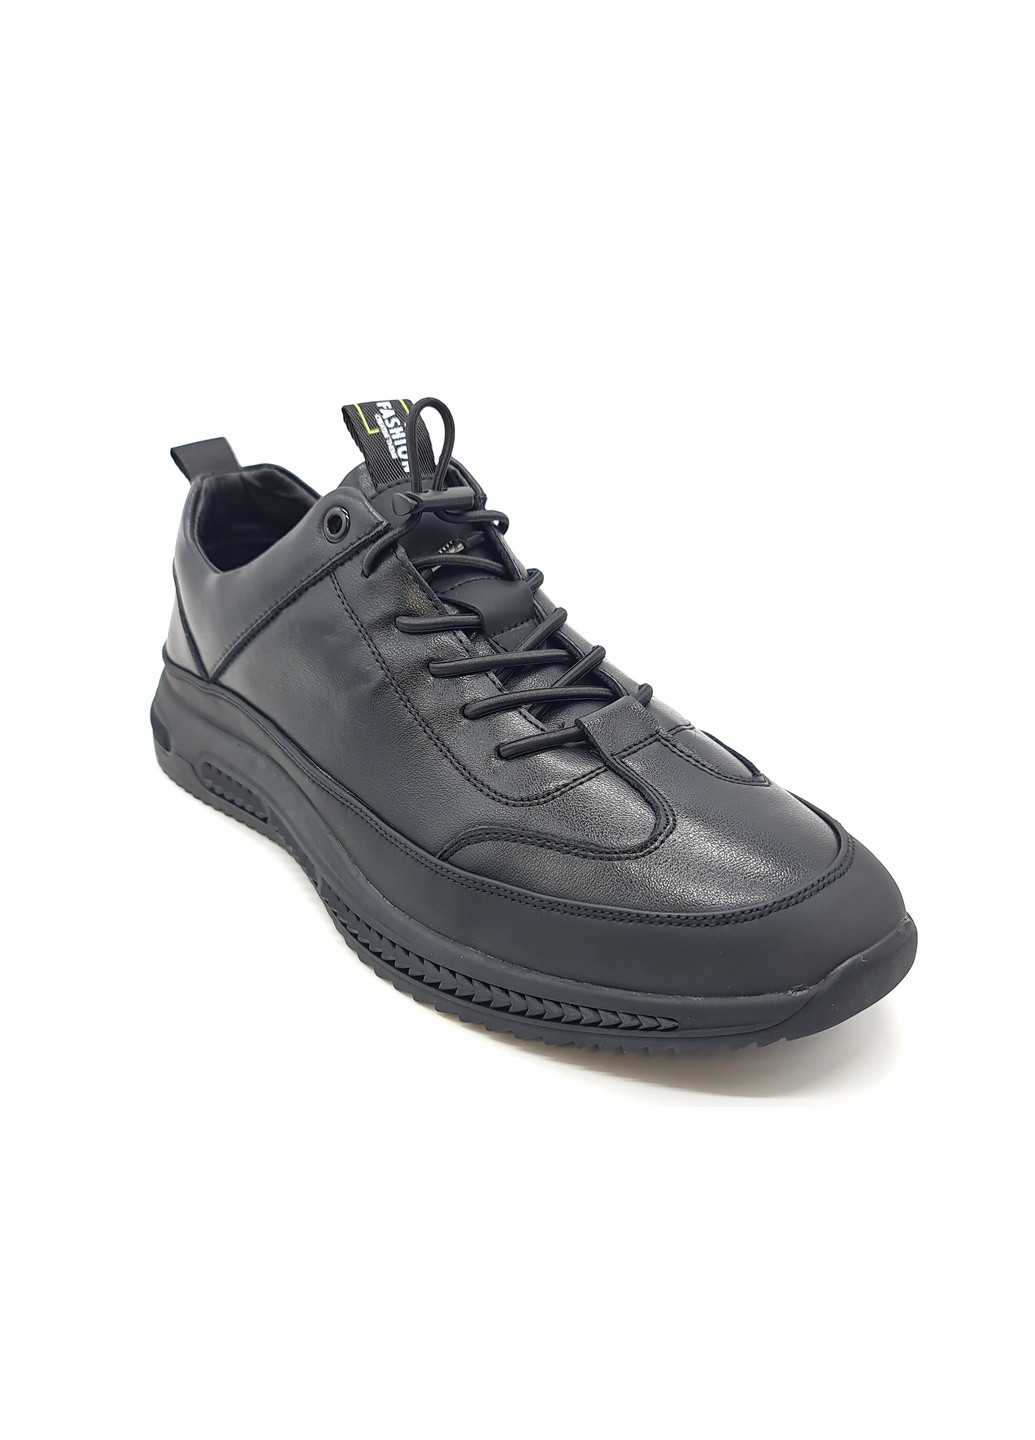 Черные чоловічі туфлі чорні шкіряні ya-11-6 27 см (р) Yalasou